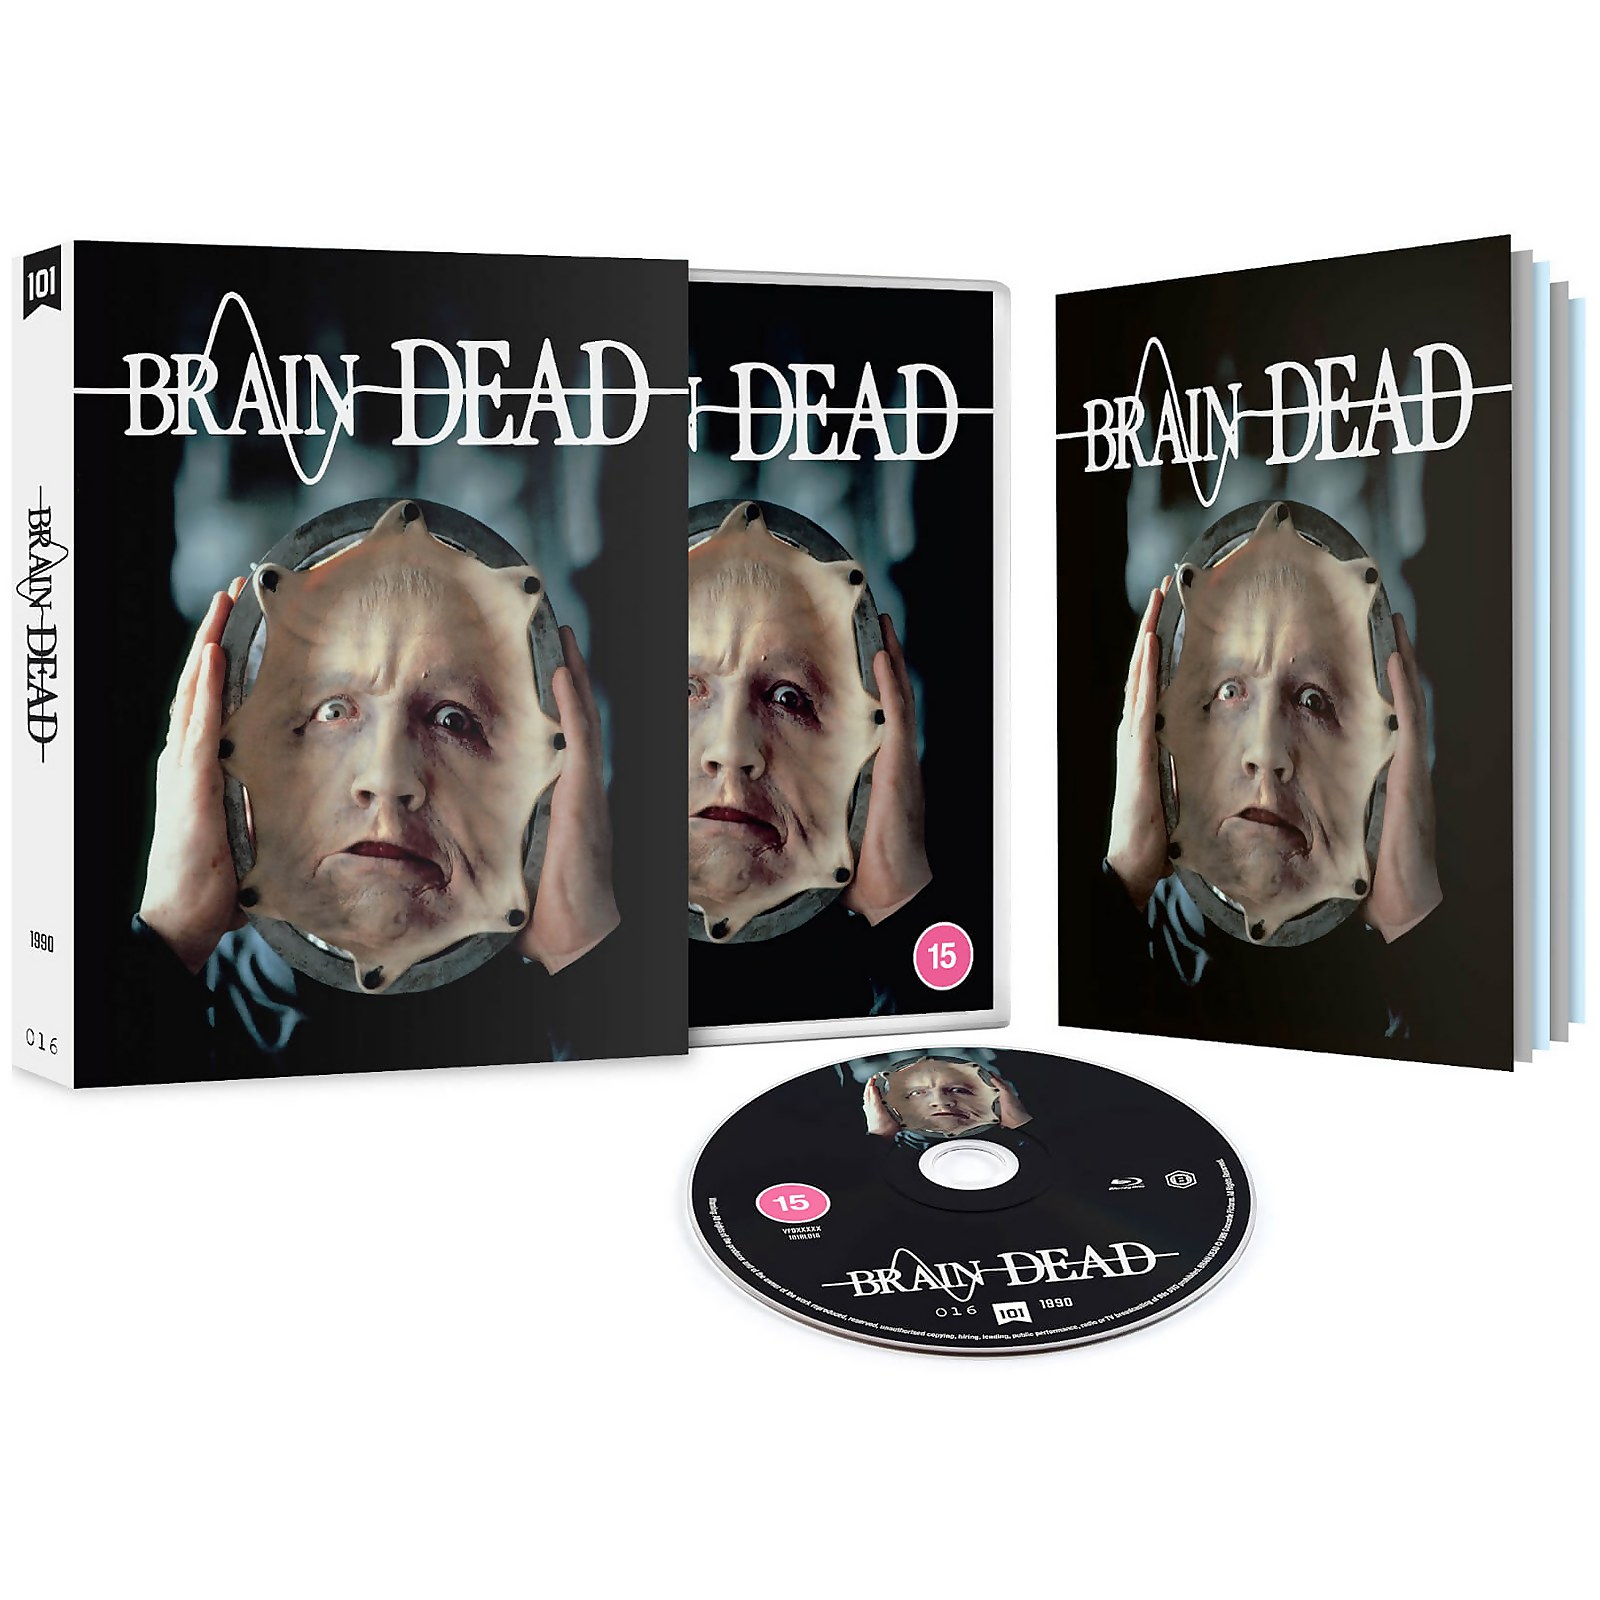 Brain Dead - Limitierte Auflage von 101 Films